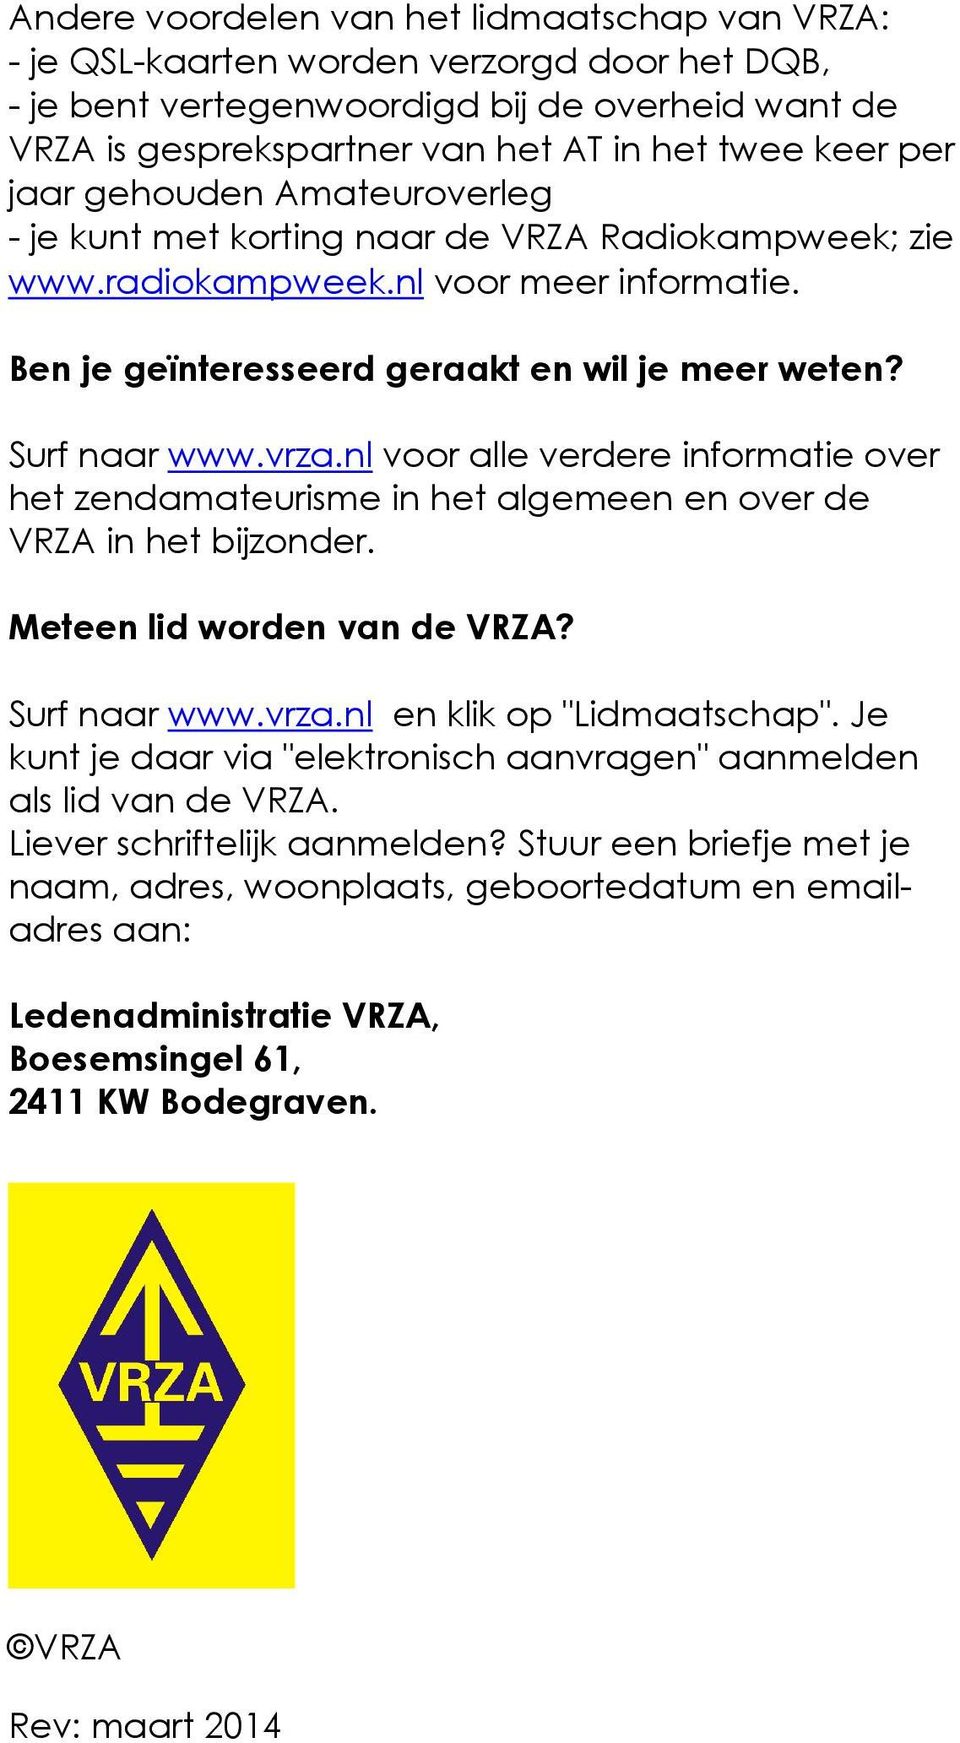 vrza.nl voor alle verdere informatie over het zendamateurisme in het algemeen en over de VRZA in het bijzonder. Meteen lid worden van de VRZA? Surf naar www.vrza.nl en klik op "Lidmaatschap".